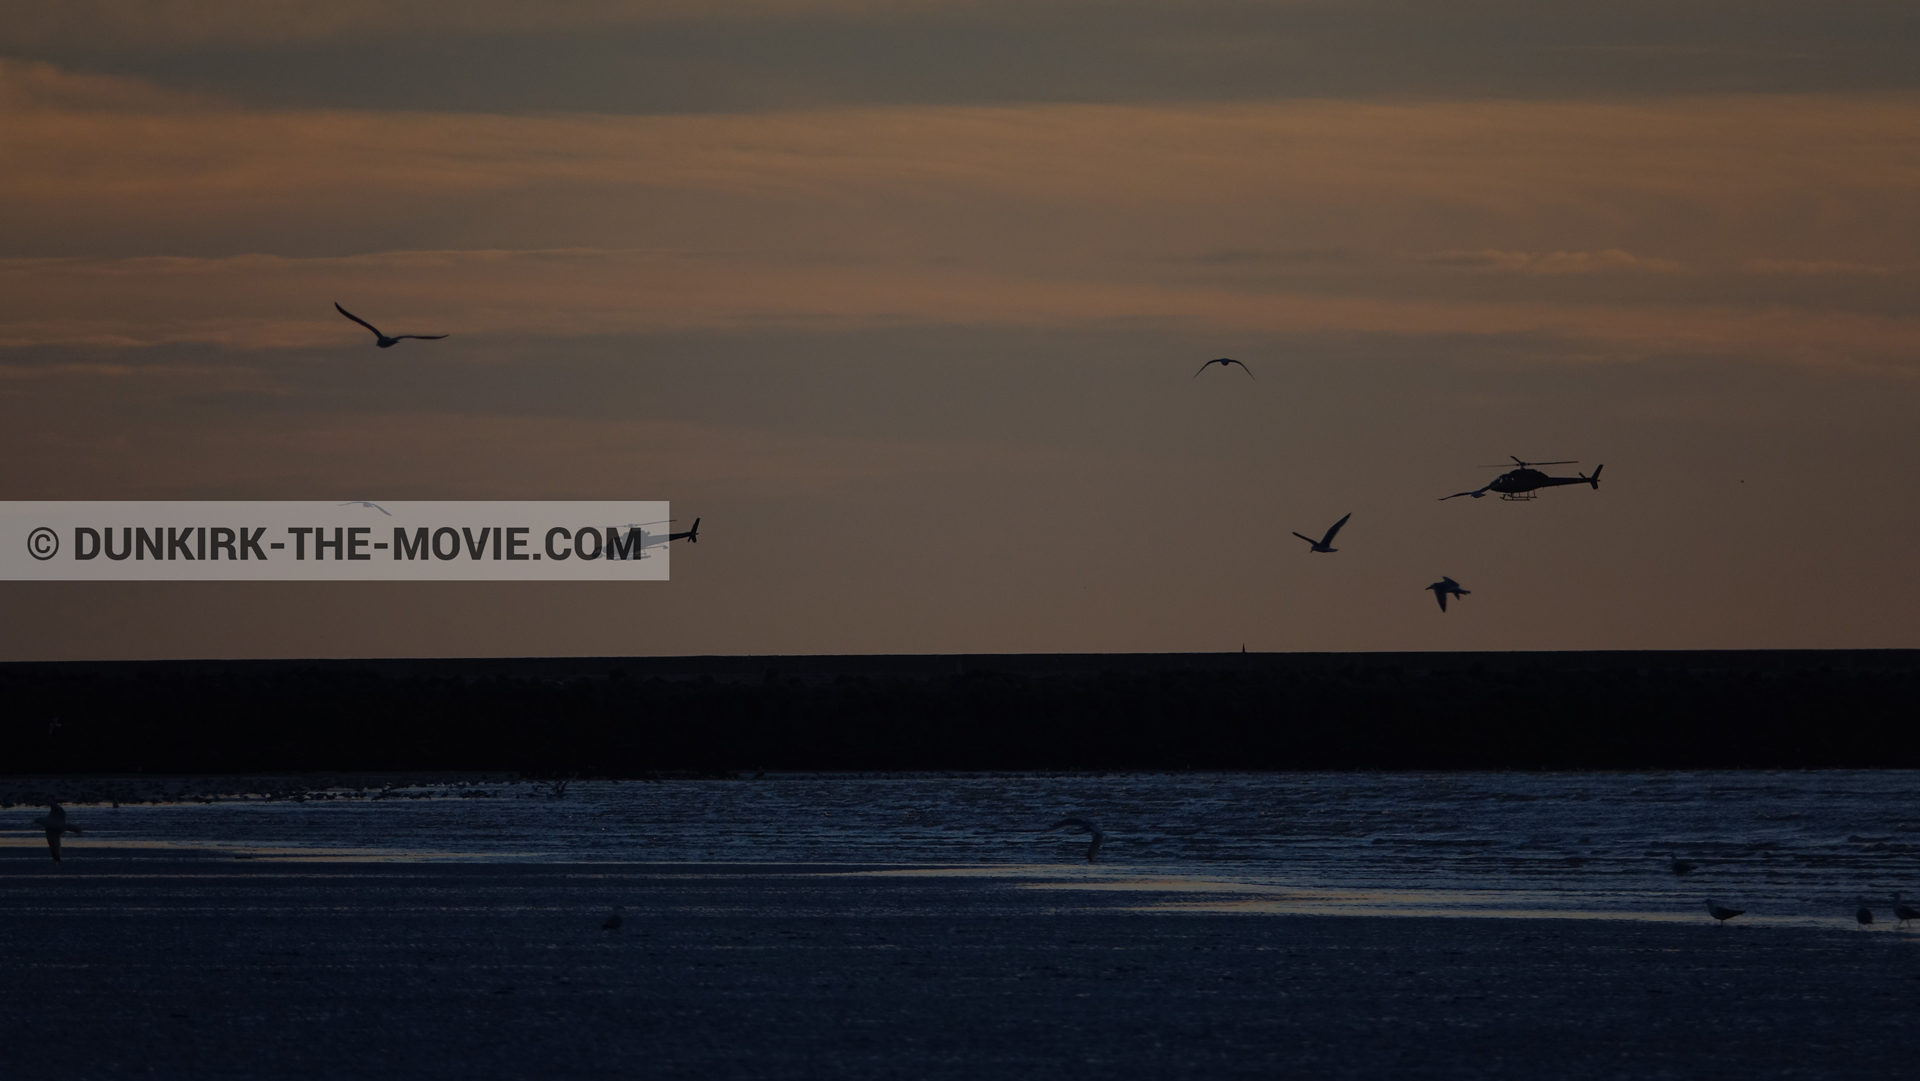 Fotos con cielo anaranjado, cámara helicóptero,  durante el rodaje de la película Dunkerque de Nolan